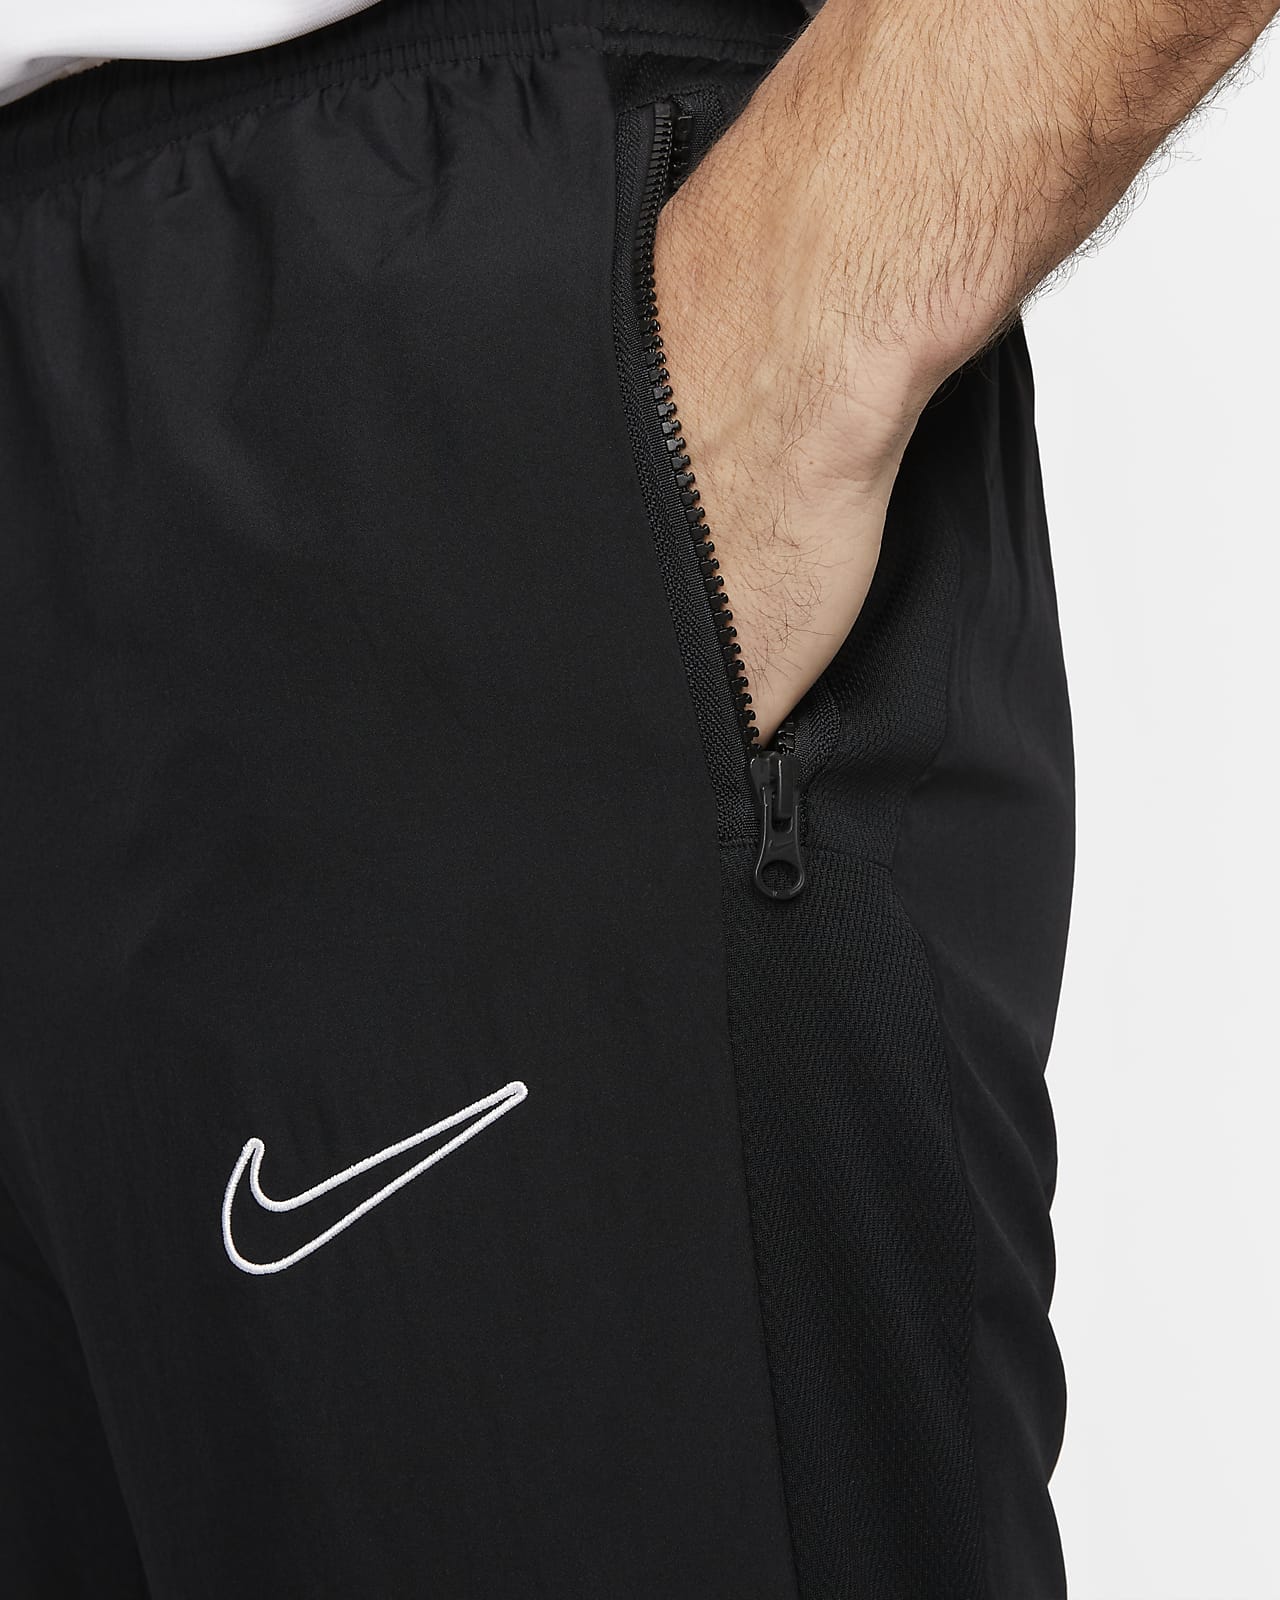 Betsy Trotwood estimular Alfabeto Nike Dri-FIT Academy Pantalón deportivo de tejido Woven de fútbol - Hombre.  Nike ES